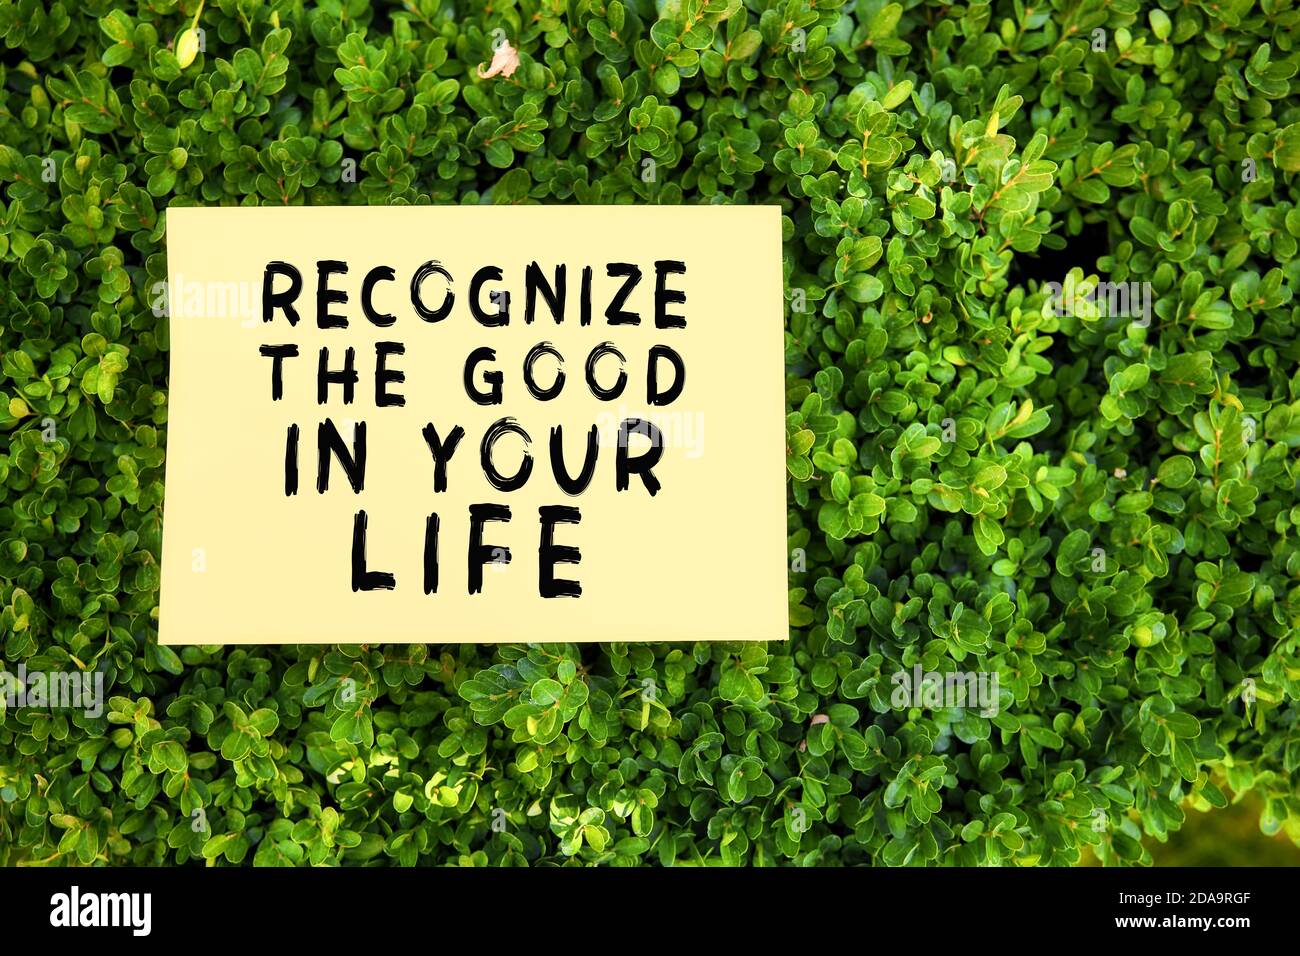 Citation inspirée reconnaître le bien dans votre vie écrit sur papier dans un jardin avec des plantes vertes dans la nature. Message de reconnaissance et de reconnaissance co Banque D'Images